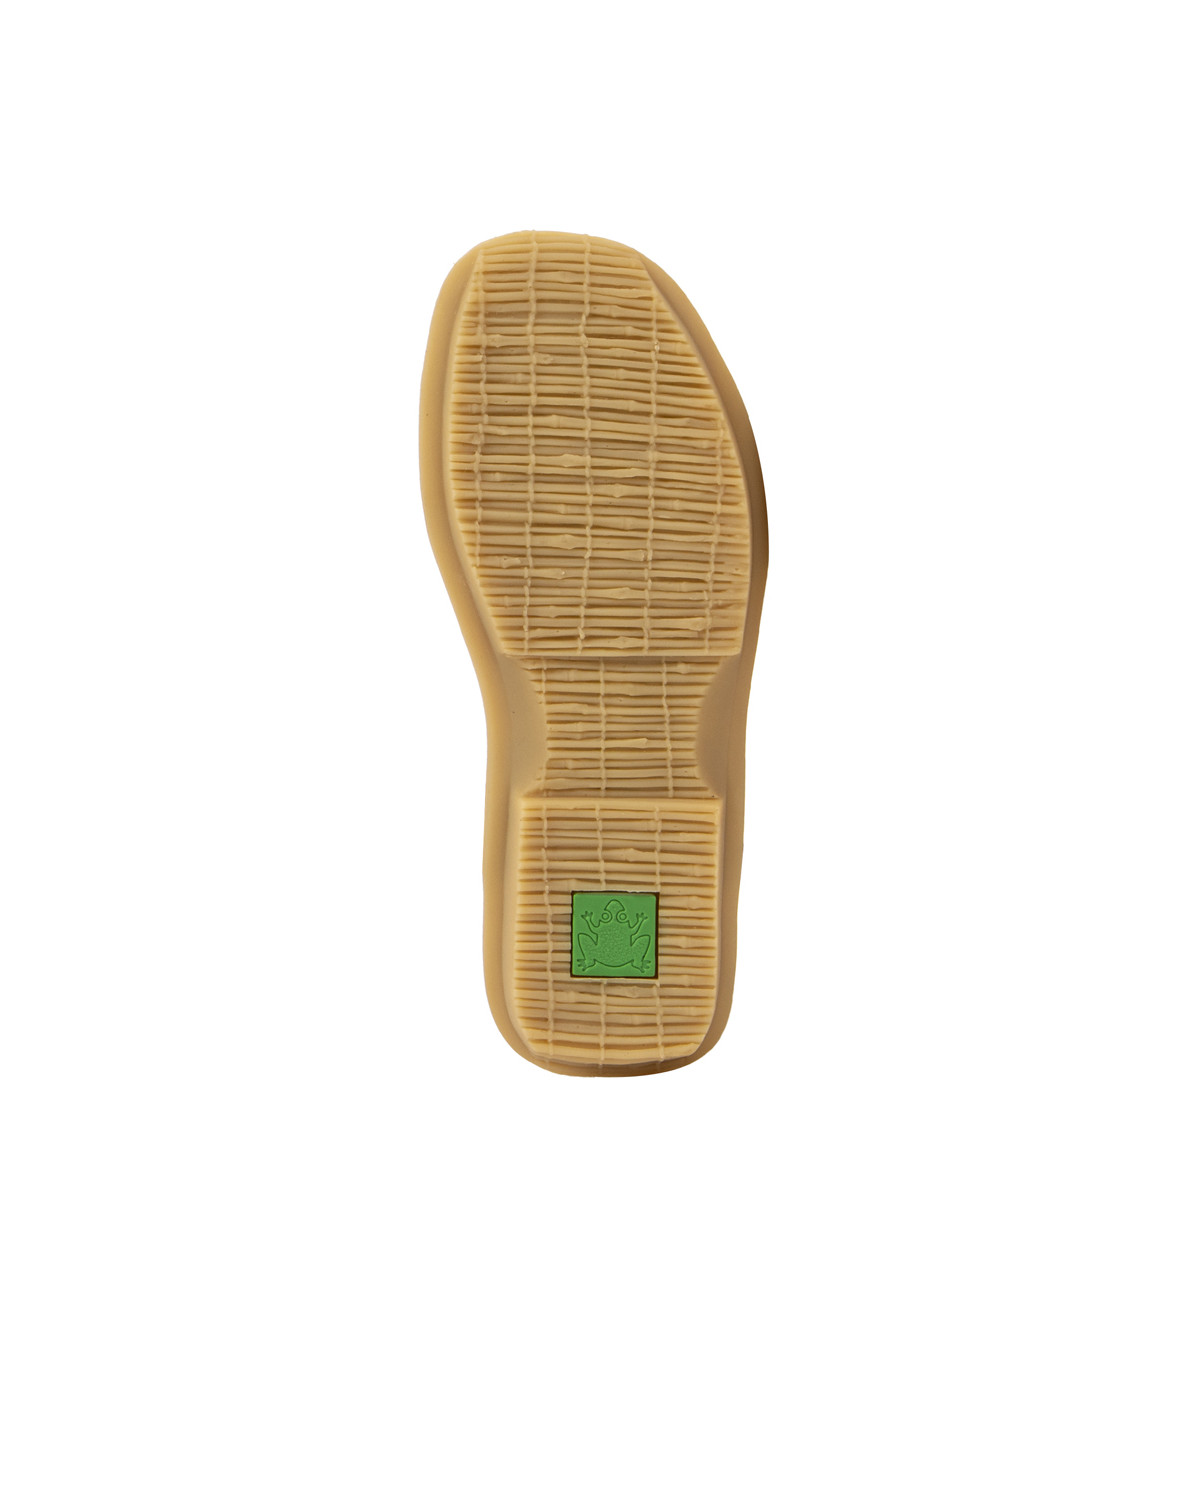 Sandales confortables plates en cuir - Marron - El naturalista